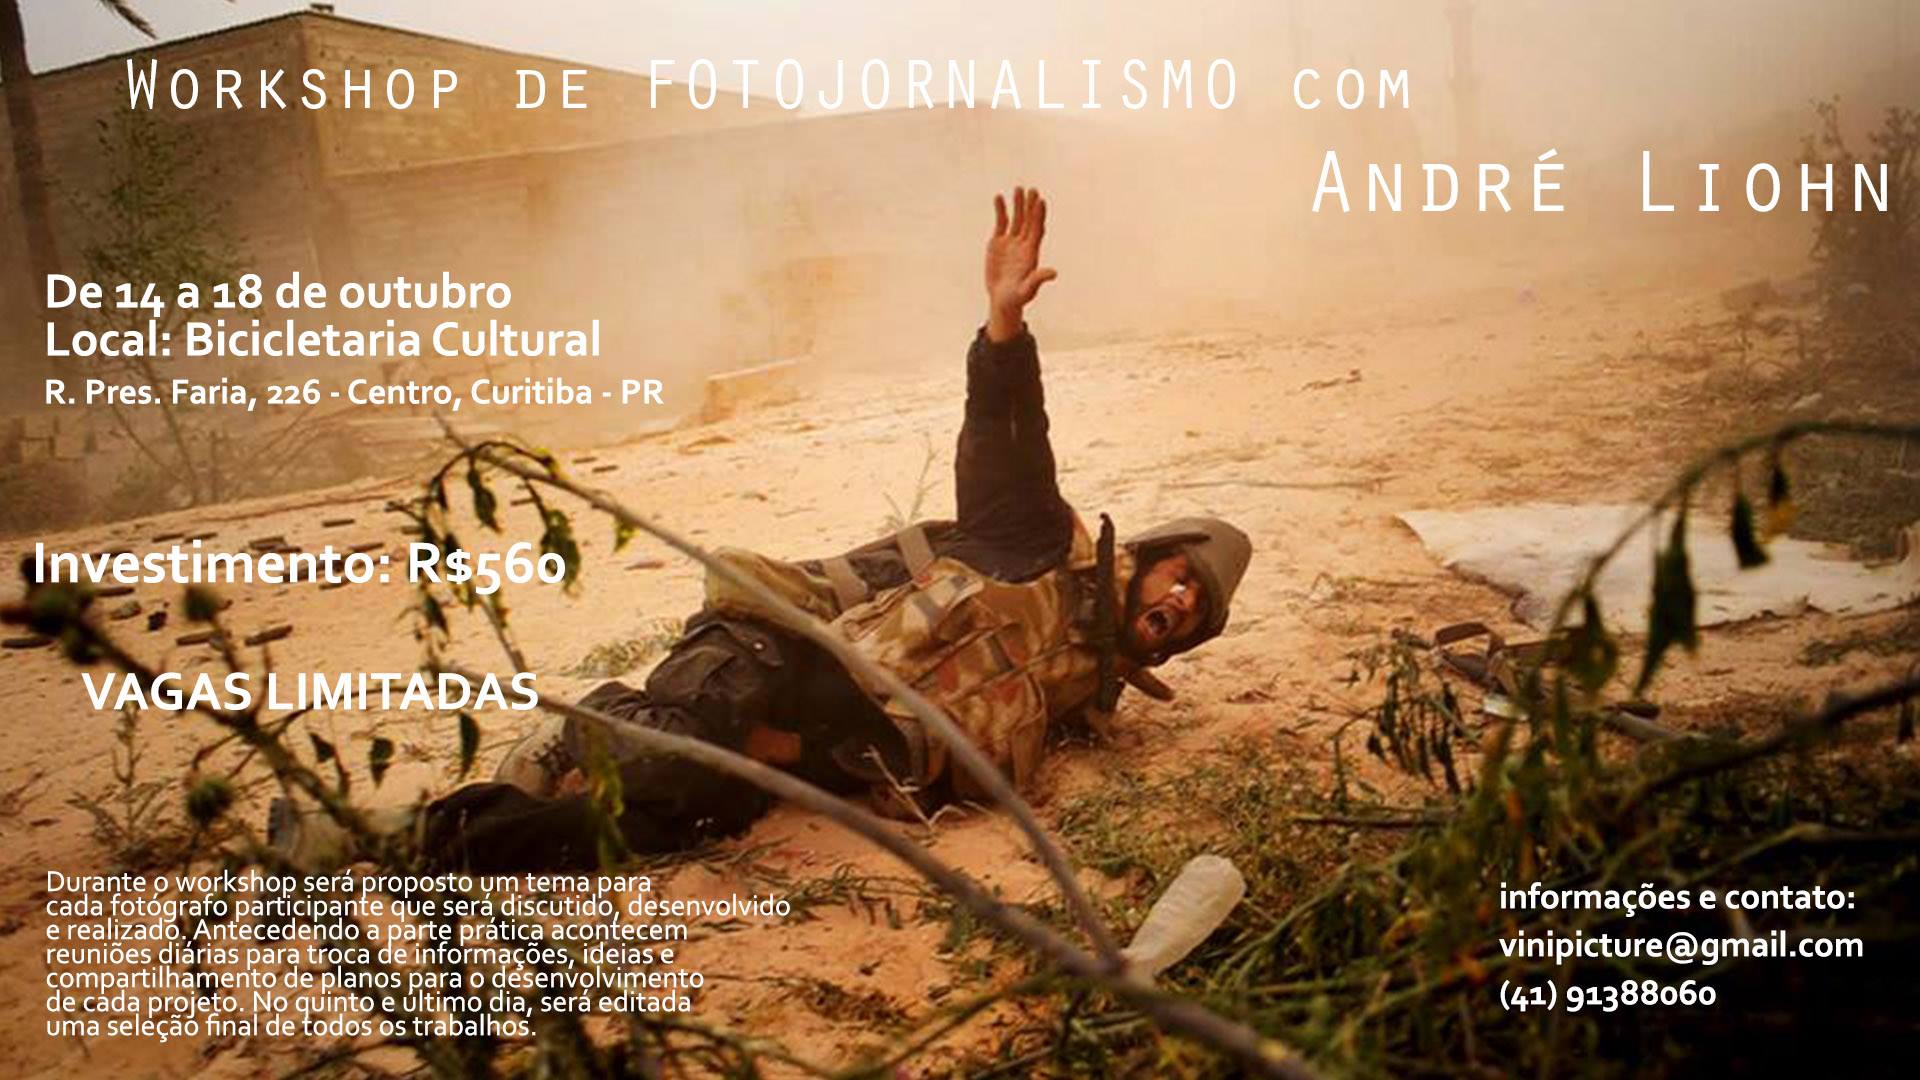 Workshop de Fotojornalismo com Andr? Liohn. de 14 a 18 de Outubro, de segunda a sexta, na Bicicletaria Cultural de Curitiba.